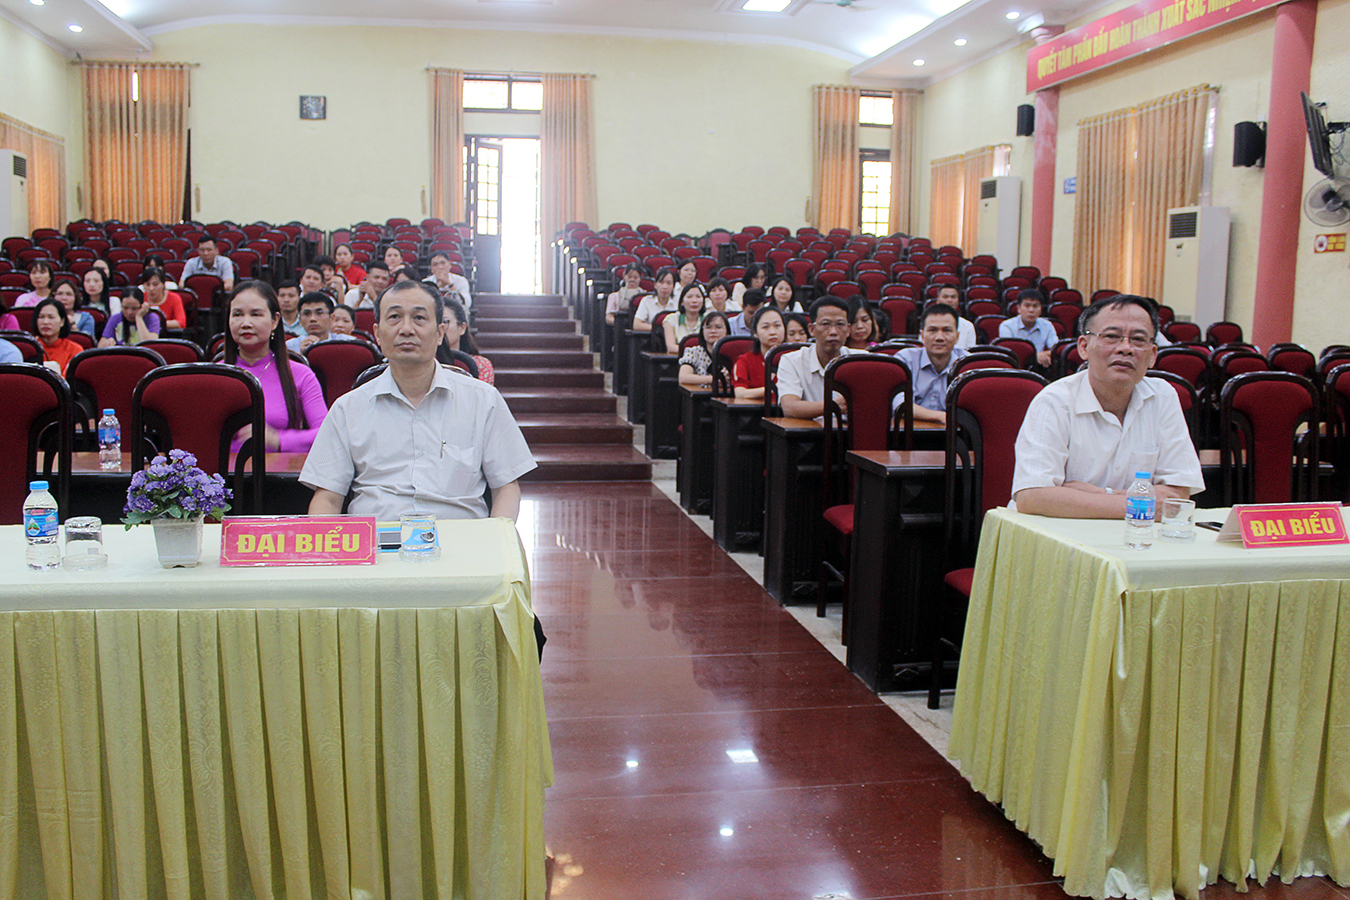 Khai giảng lớp Trung cấp lý luận chính trị hệ không tập trung KA-21 (2023-2024) tại trường Chính trị Nguyễn Văn Linh